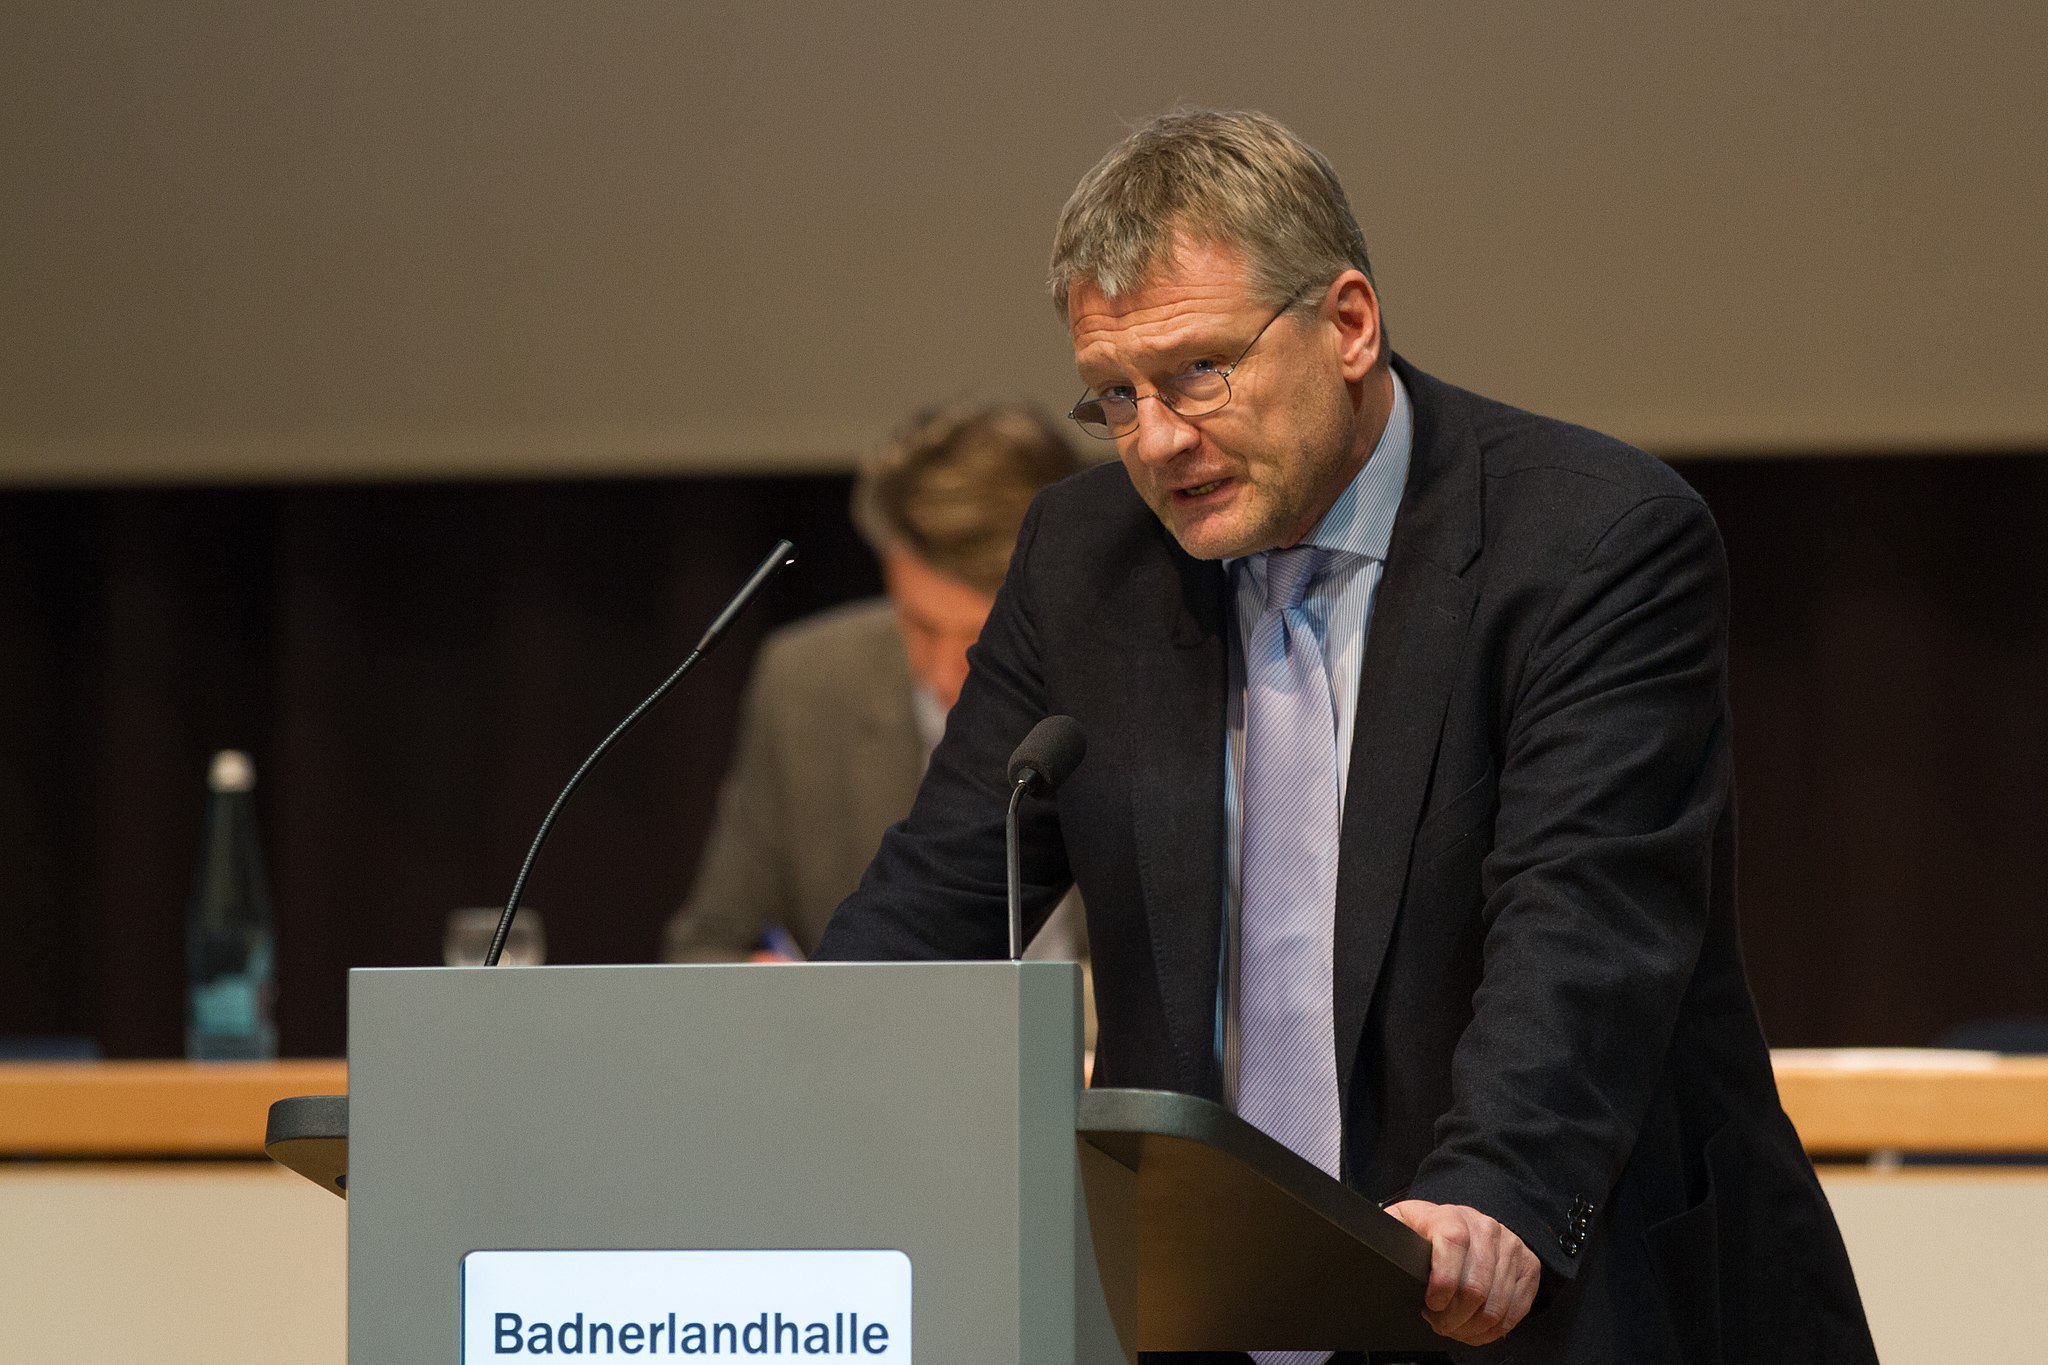 Bild: Robin Krahl, 2015-01-17 3813 Jörg Meuthen (Landesparteitag AfD Baden-Württemberg), CC BY-SA 4.0, via Wikimedia Commons (keine Änderungen vorgenommen)